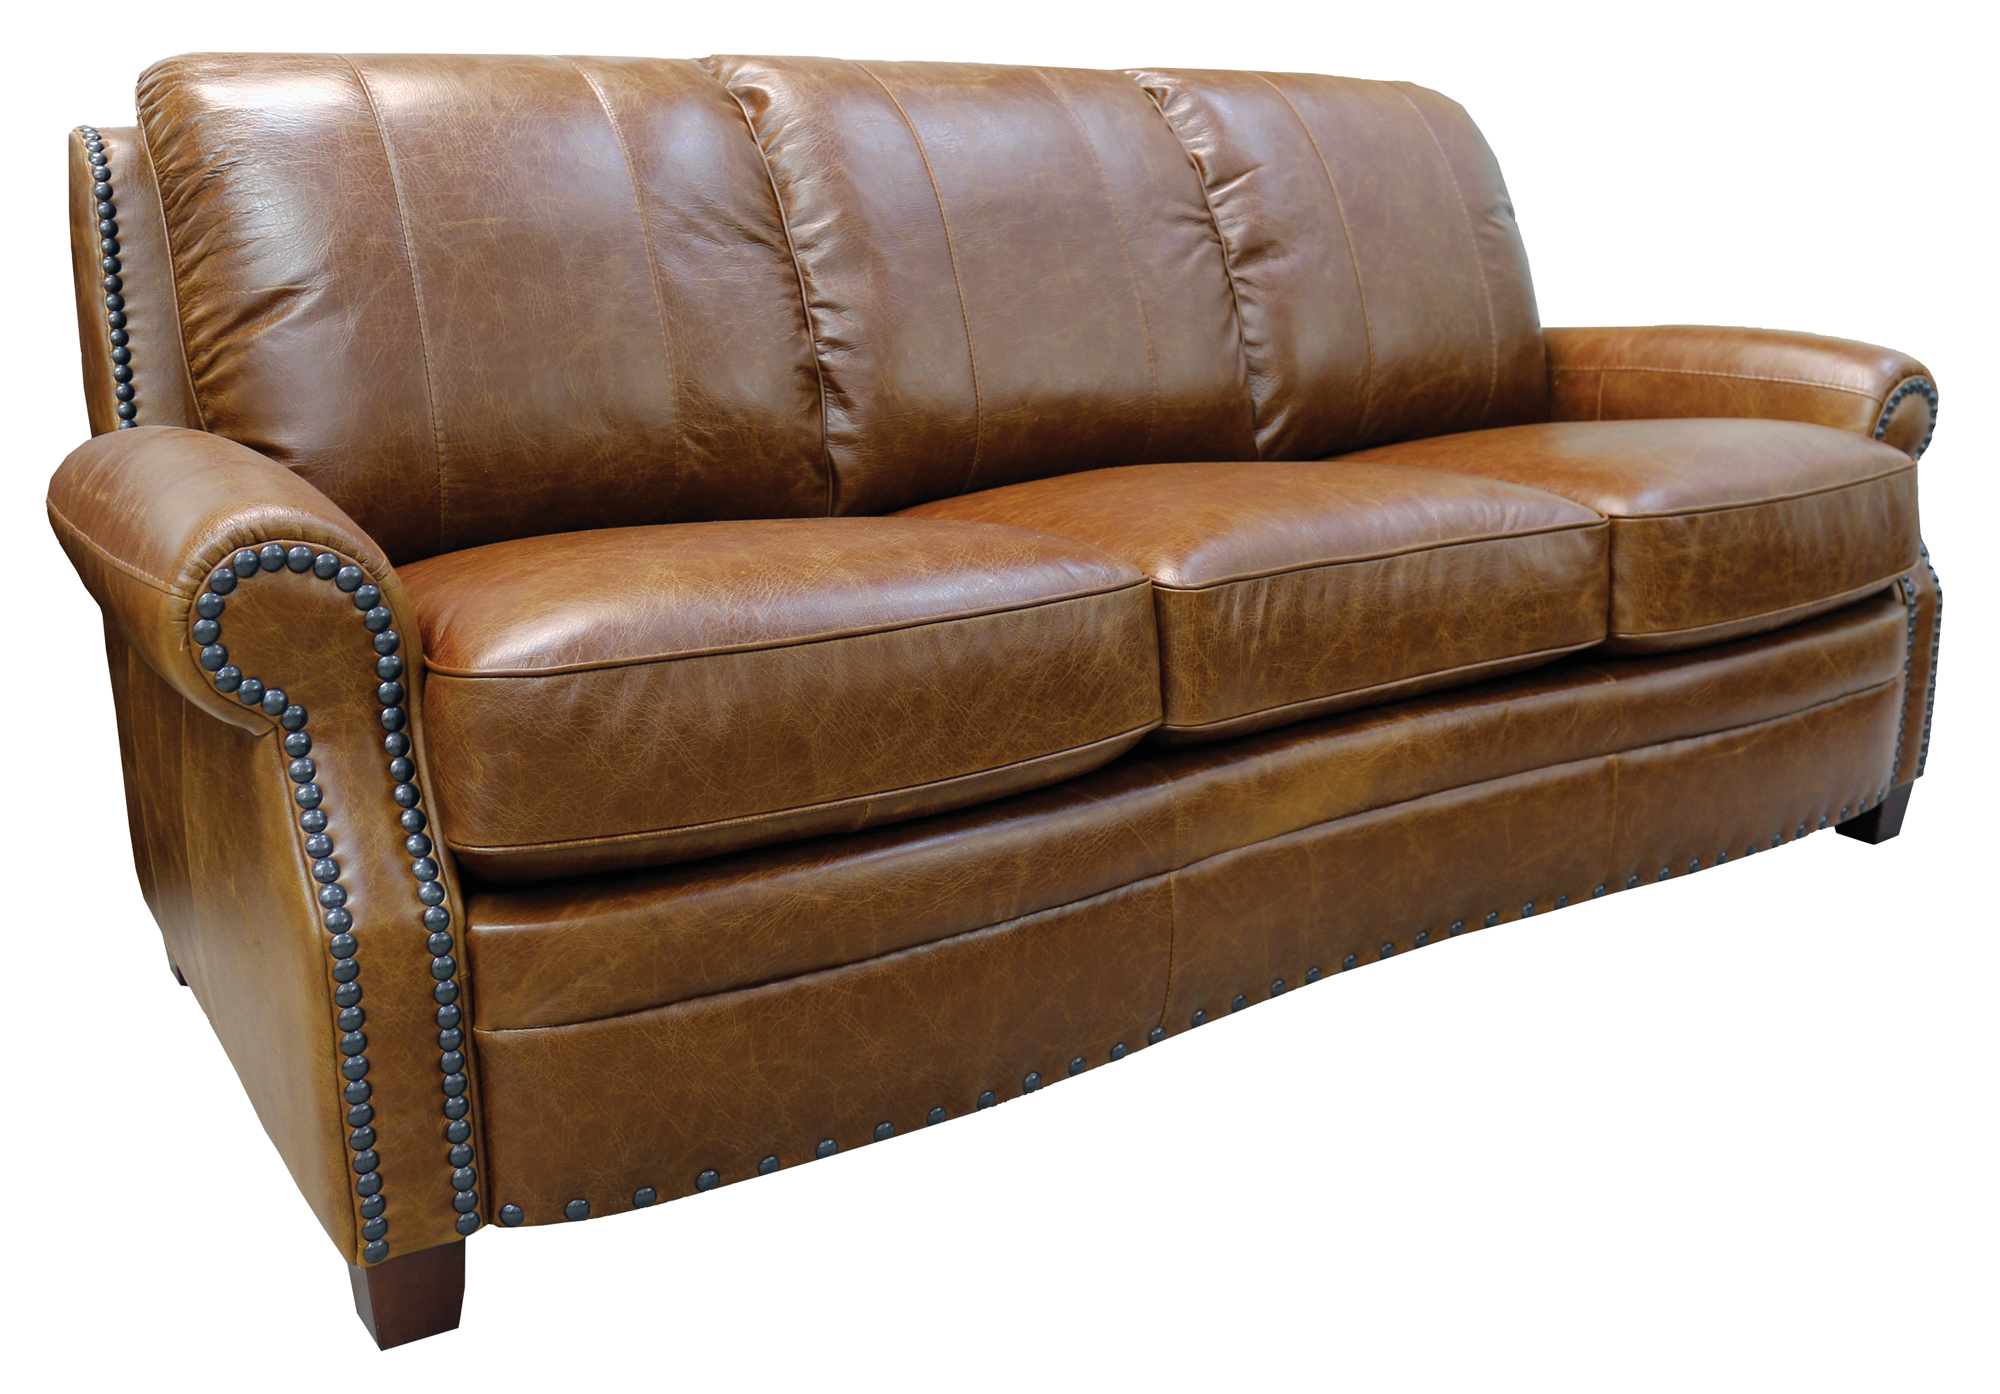 Ashton S 156 Luke Leather Sofa Safari, Luke Leather Furniture